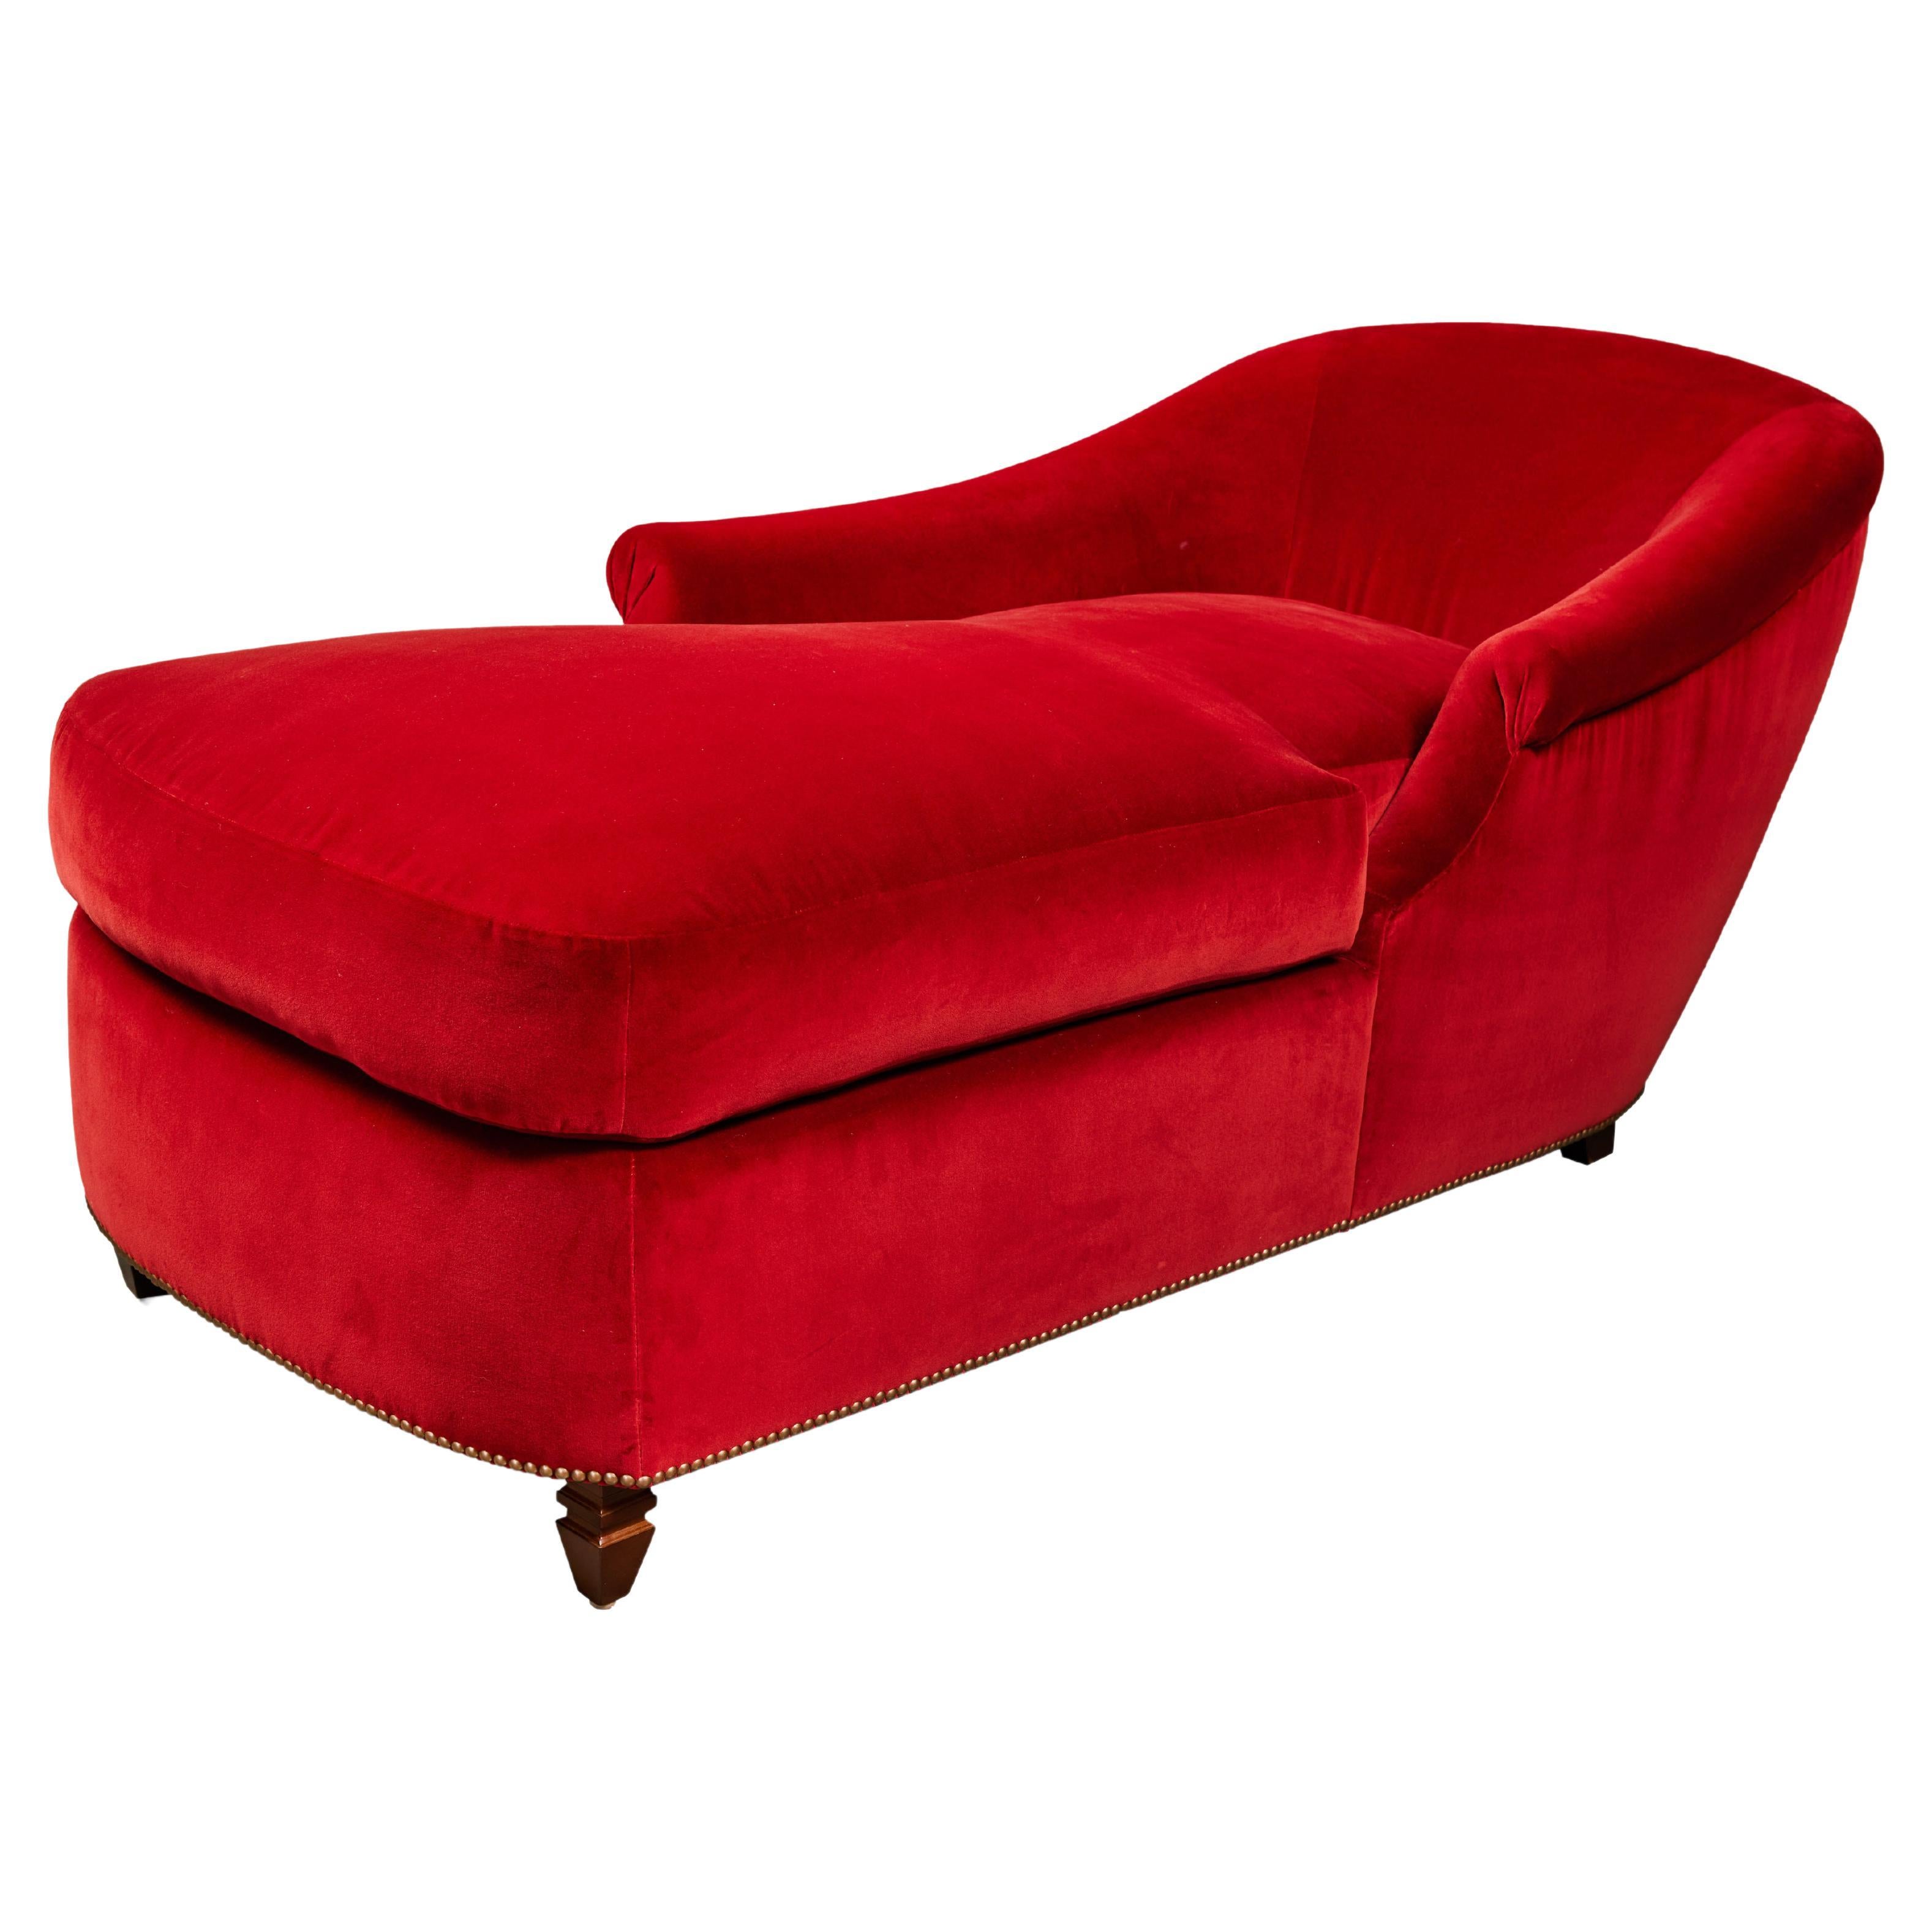 Custom Chaise Lounge Upholstered in Belgian Cotton Velvet